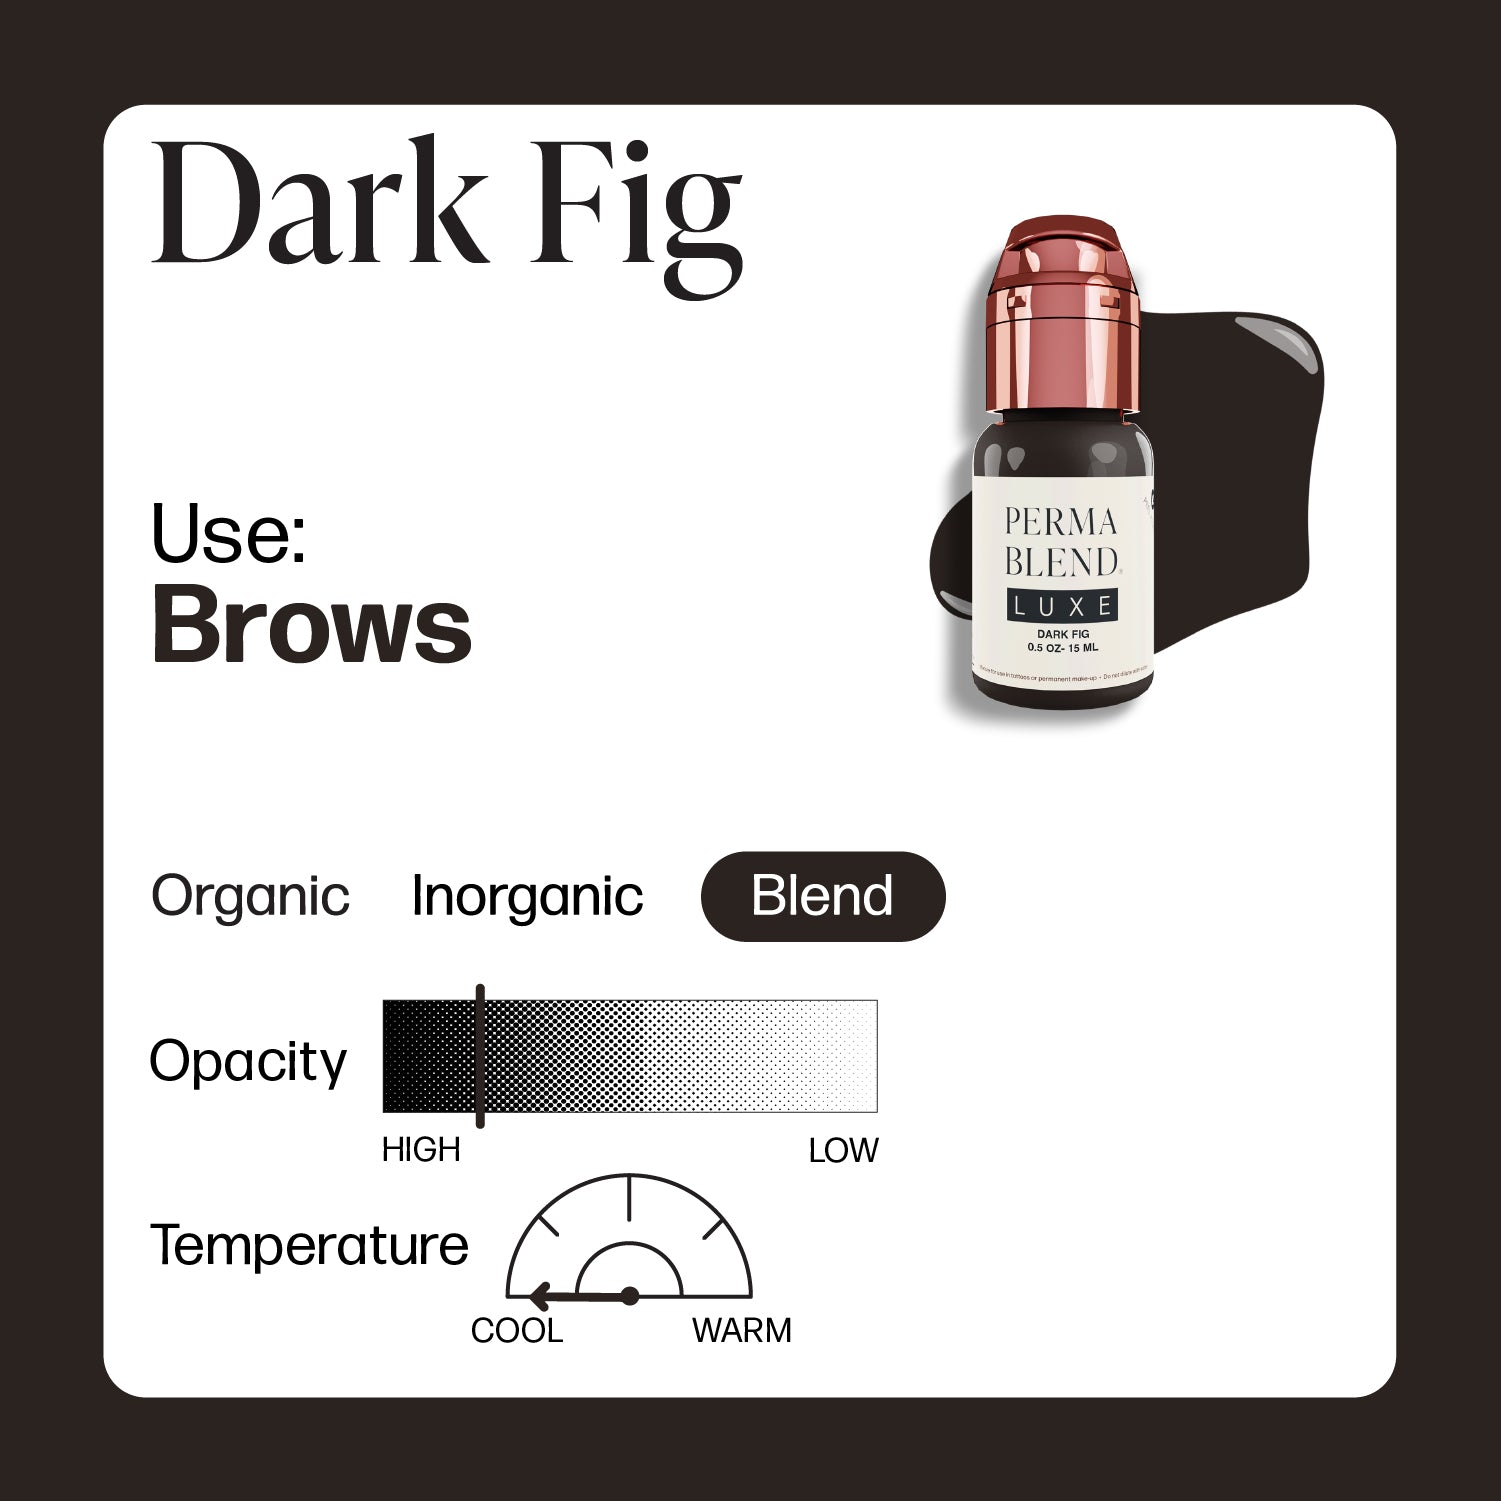 Dark Fig - Perma Blend Luxe